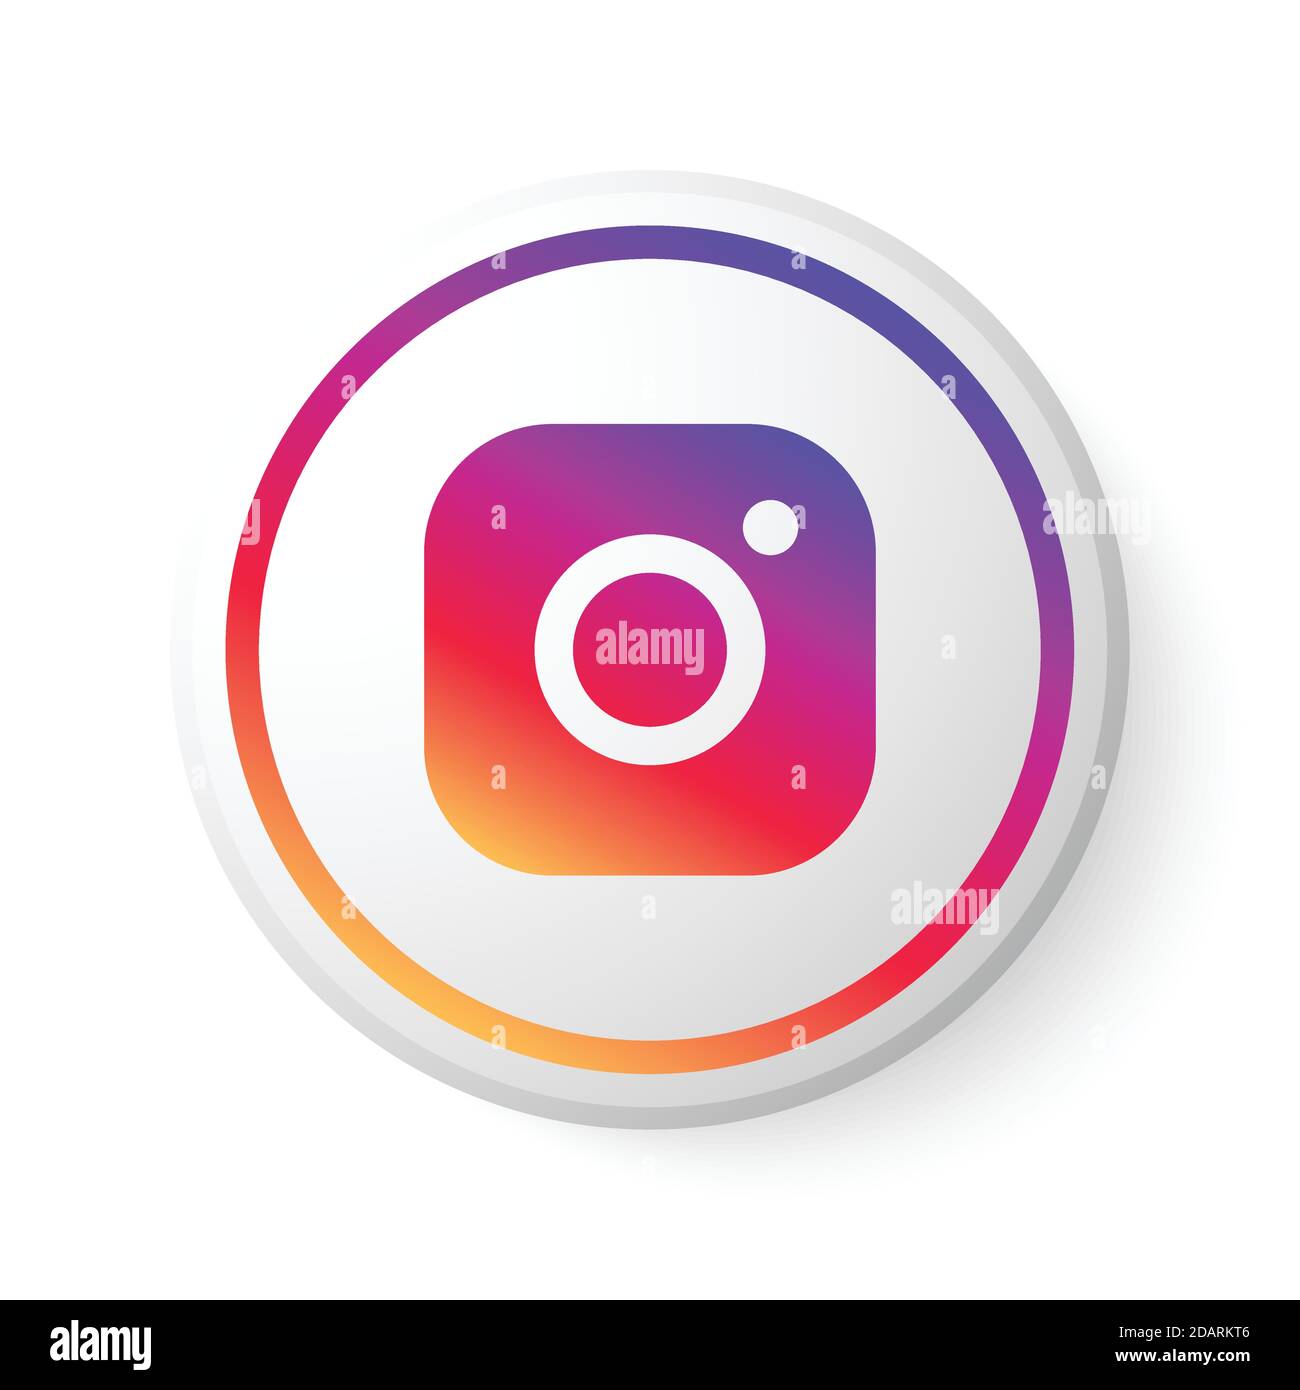 Pulsante cerchio Instagram con logo Icona dei social media con design moderno per sfondo bianco. Modello rotondo 3D con una bella forma Immagine e Vettoriale - Alamy